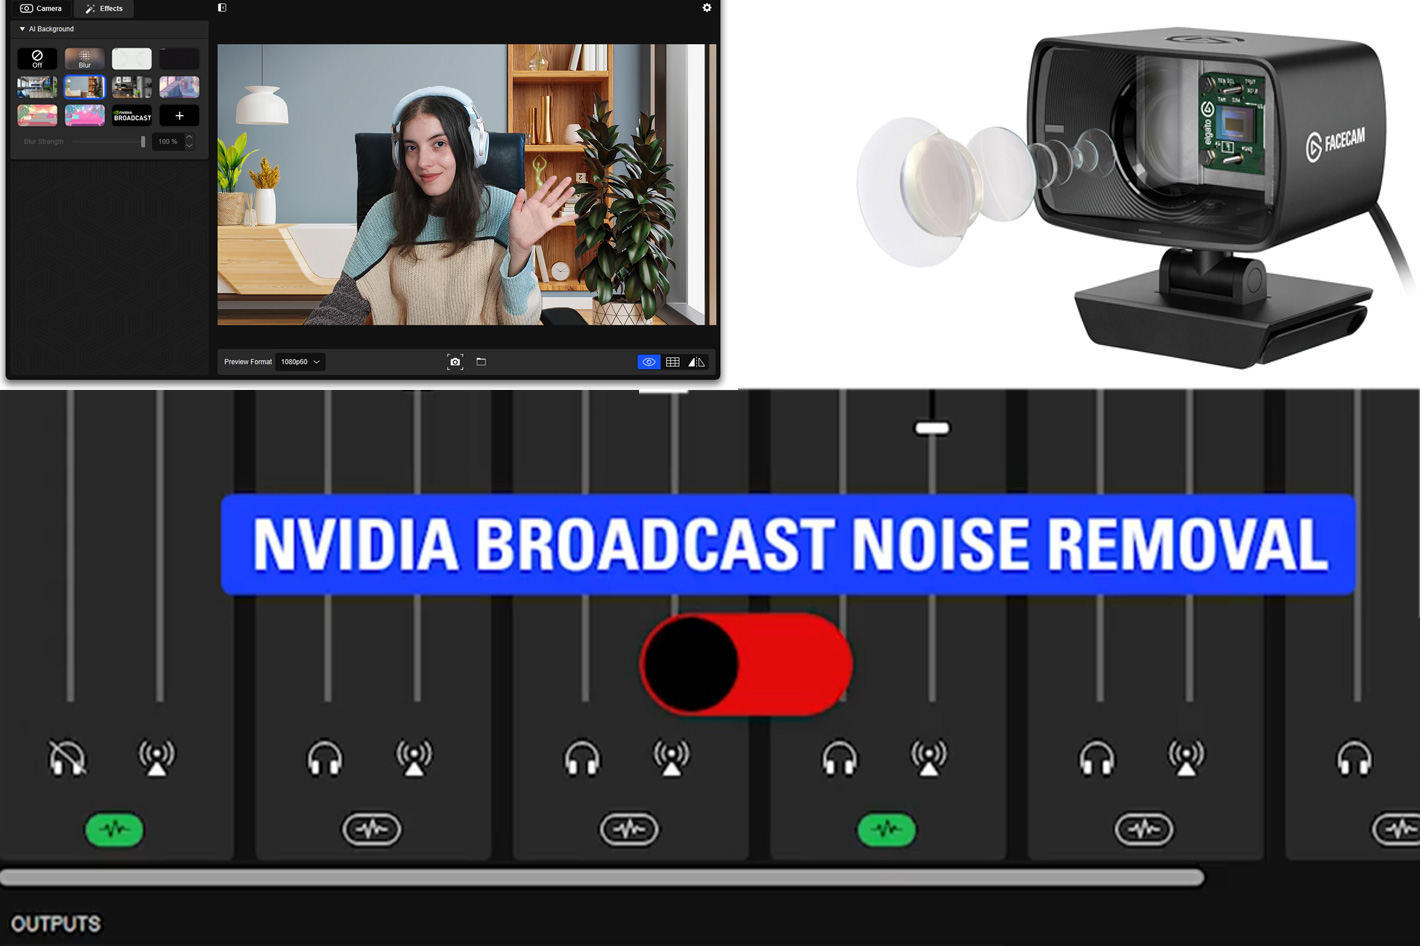 NVIDIA Broadcast là một giải pháp tiên tiến cho việc tạo nên những bức ảnh, video chất lượng cao và đẳng cấp. Với tích hợp vào phần mềm CORSAIR và Elgato, bạn có thể sáng tạo và sản xuất nội dung chuyên nghiệp nhất. Còn chần chờ gì nữa, hãy đến và khám phá những tính năng độc đáo của NVIDIA Broadcast cùng chúng tôi.